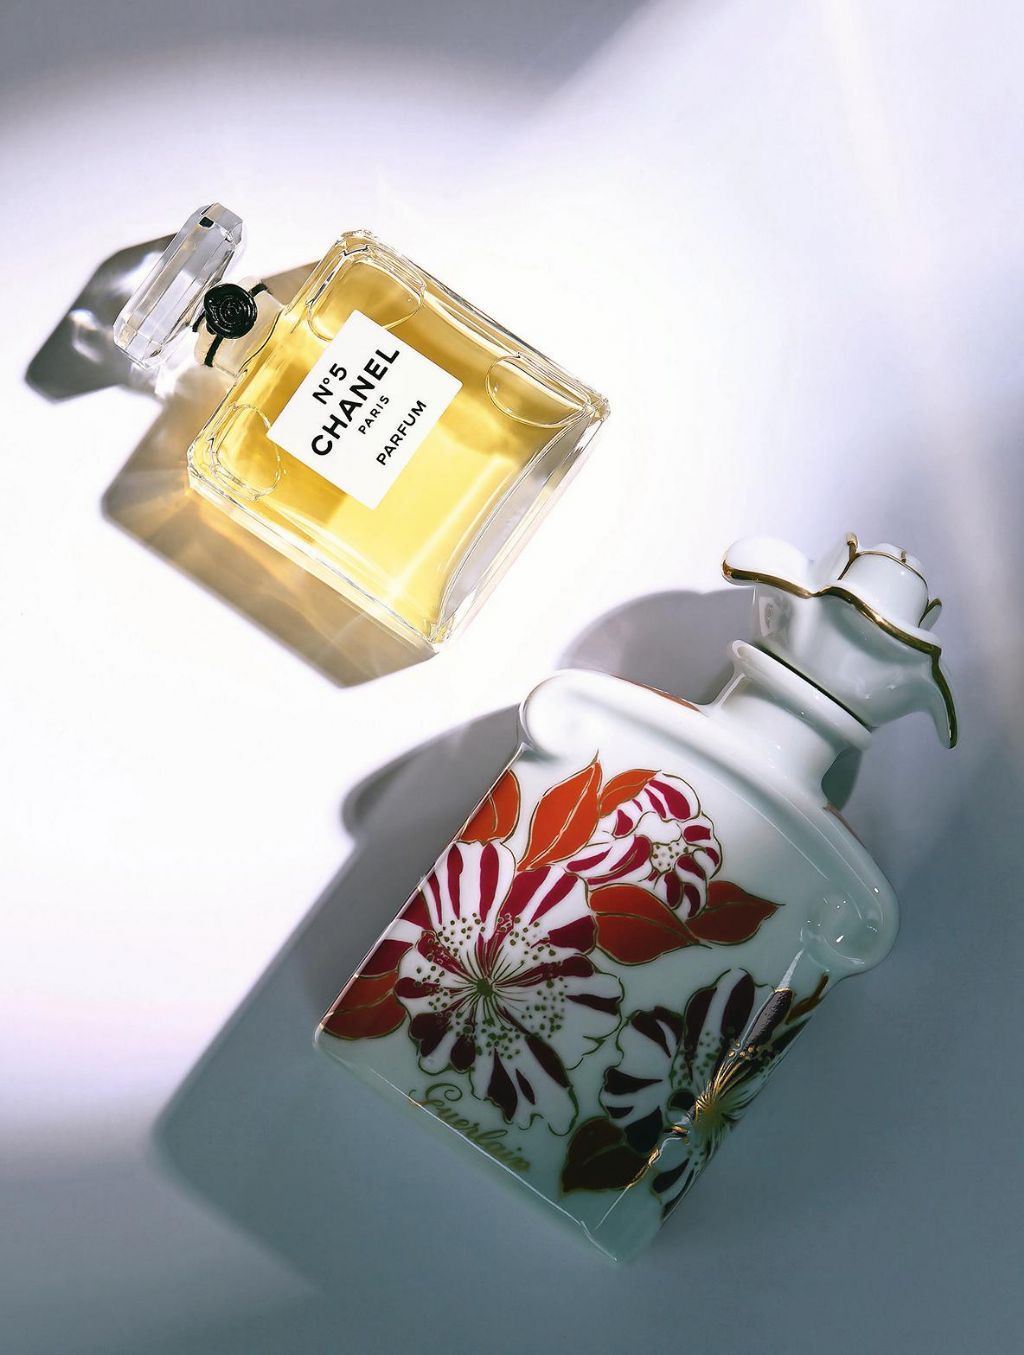 Les parfums Louis Vuitton par Jacques Cavallier-Belletrud – L'Express